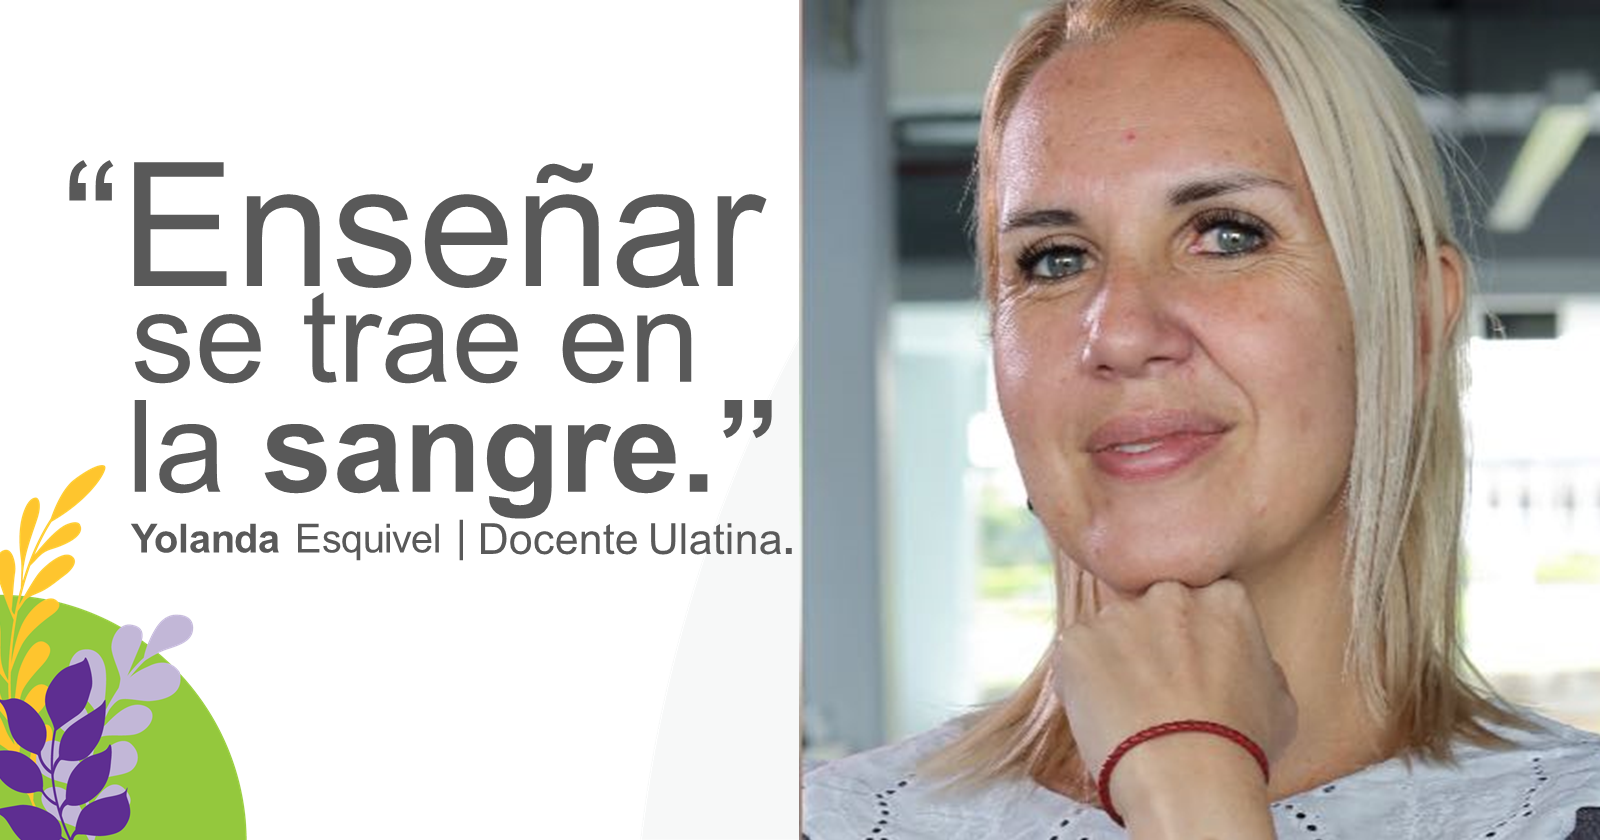 Es un reto el que padres nos depositen la formación profesional de sus hijos - Yolanda Esquivel, docente ULatina